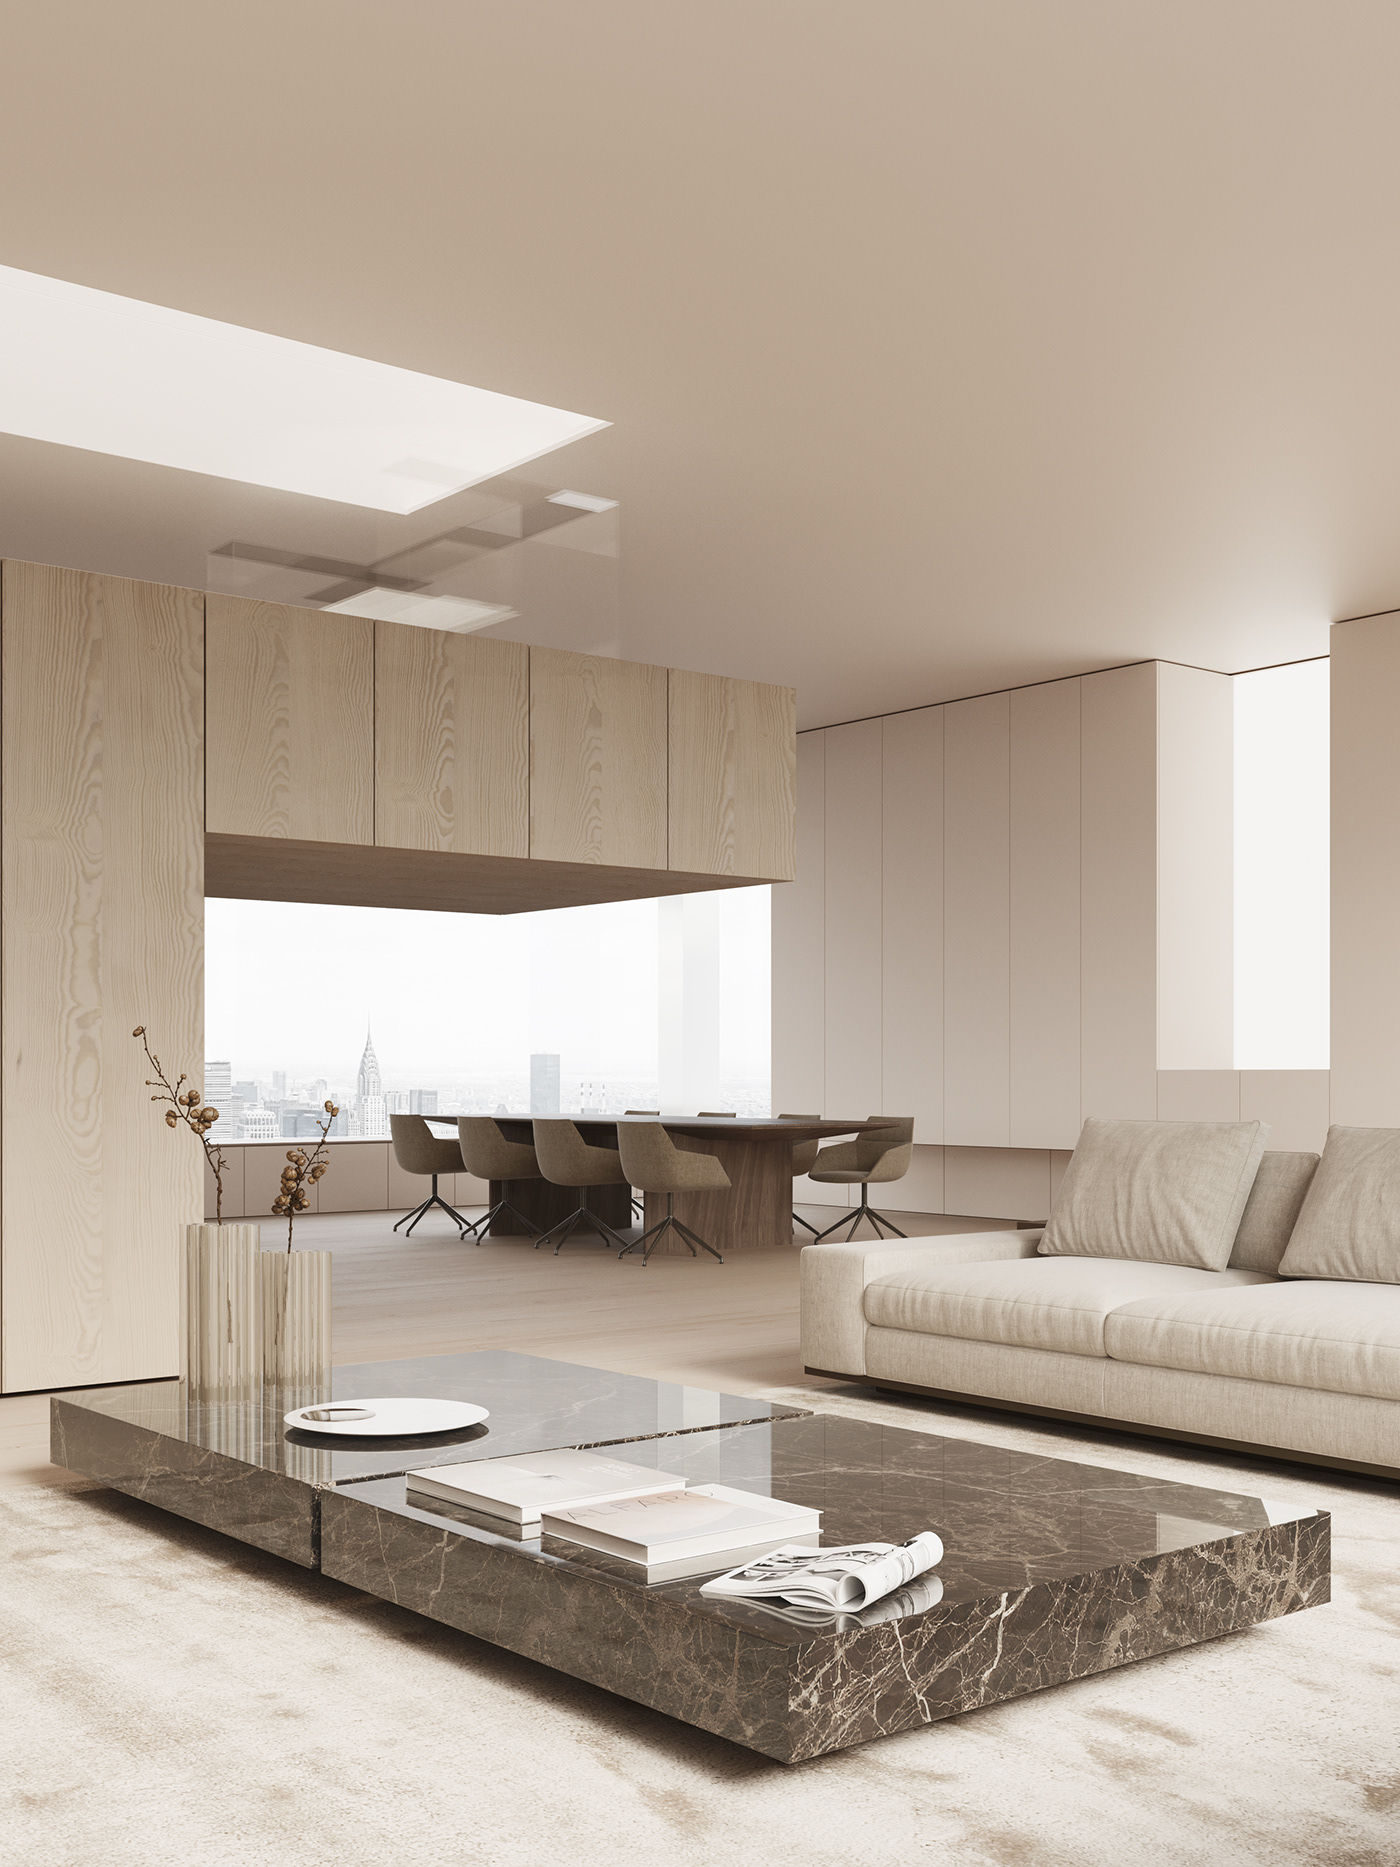 3ds max archviz design interior design  interiorimo Render visualization